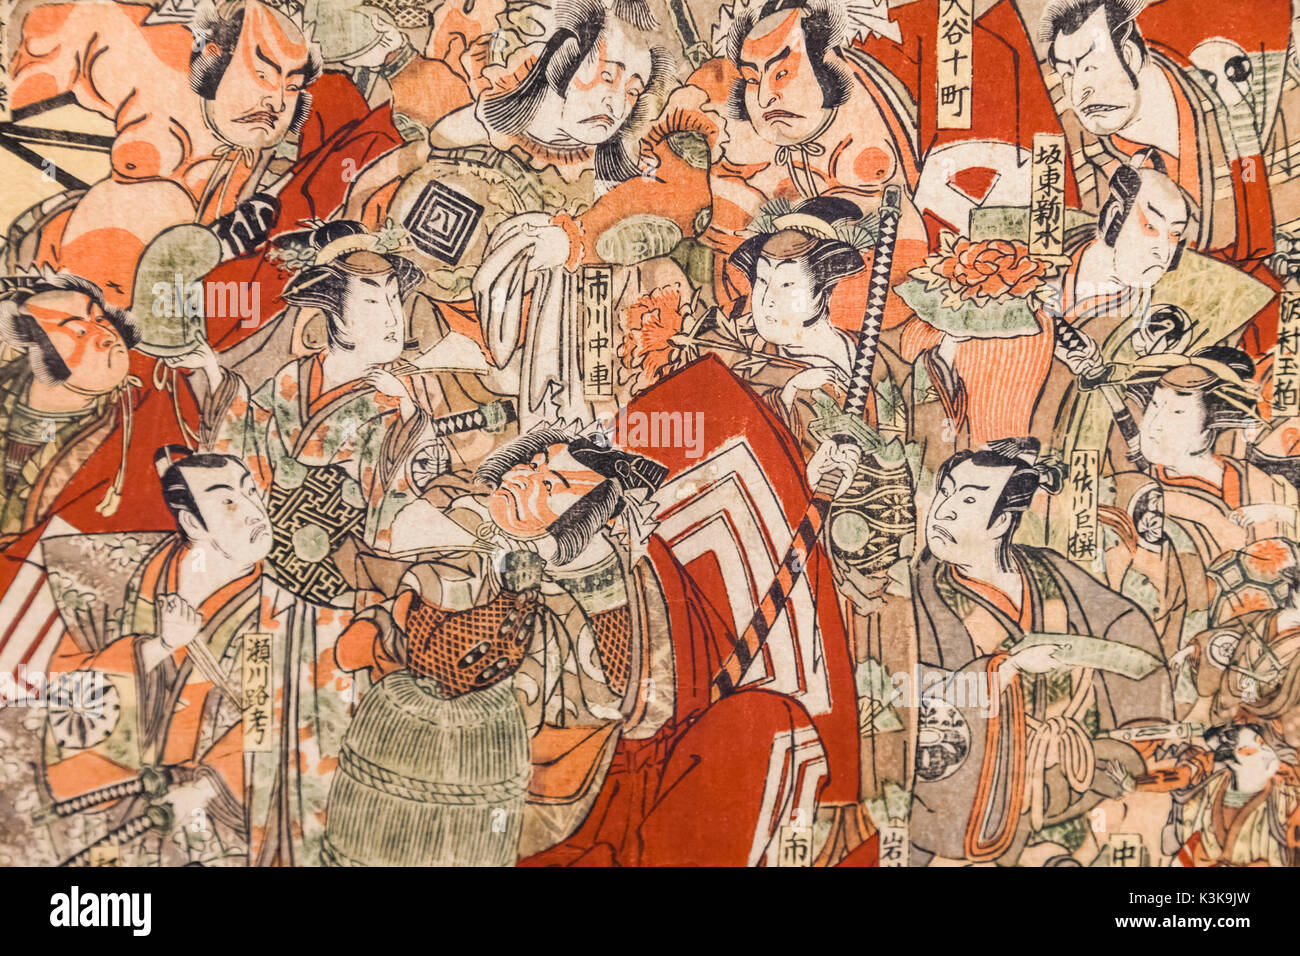 Giappone, Hoshu, Tokyo, il parco Ueno, Museo Nazionale di Tokyo, Honkan Hall, stampa che mostra gli attori Kabuki di tre teatri di Edo da Katsukawa Shunko datata 1791 Foto Stock